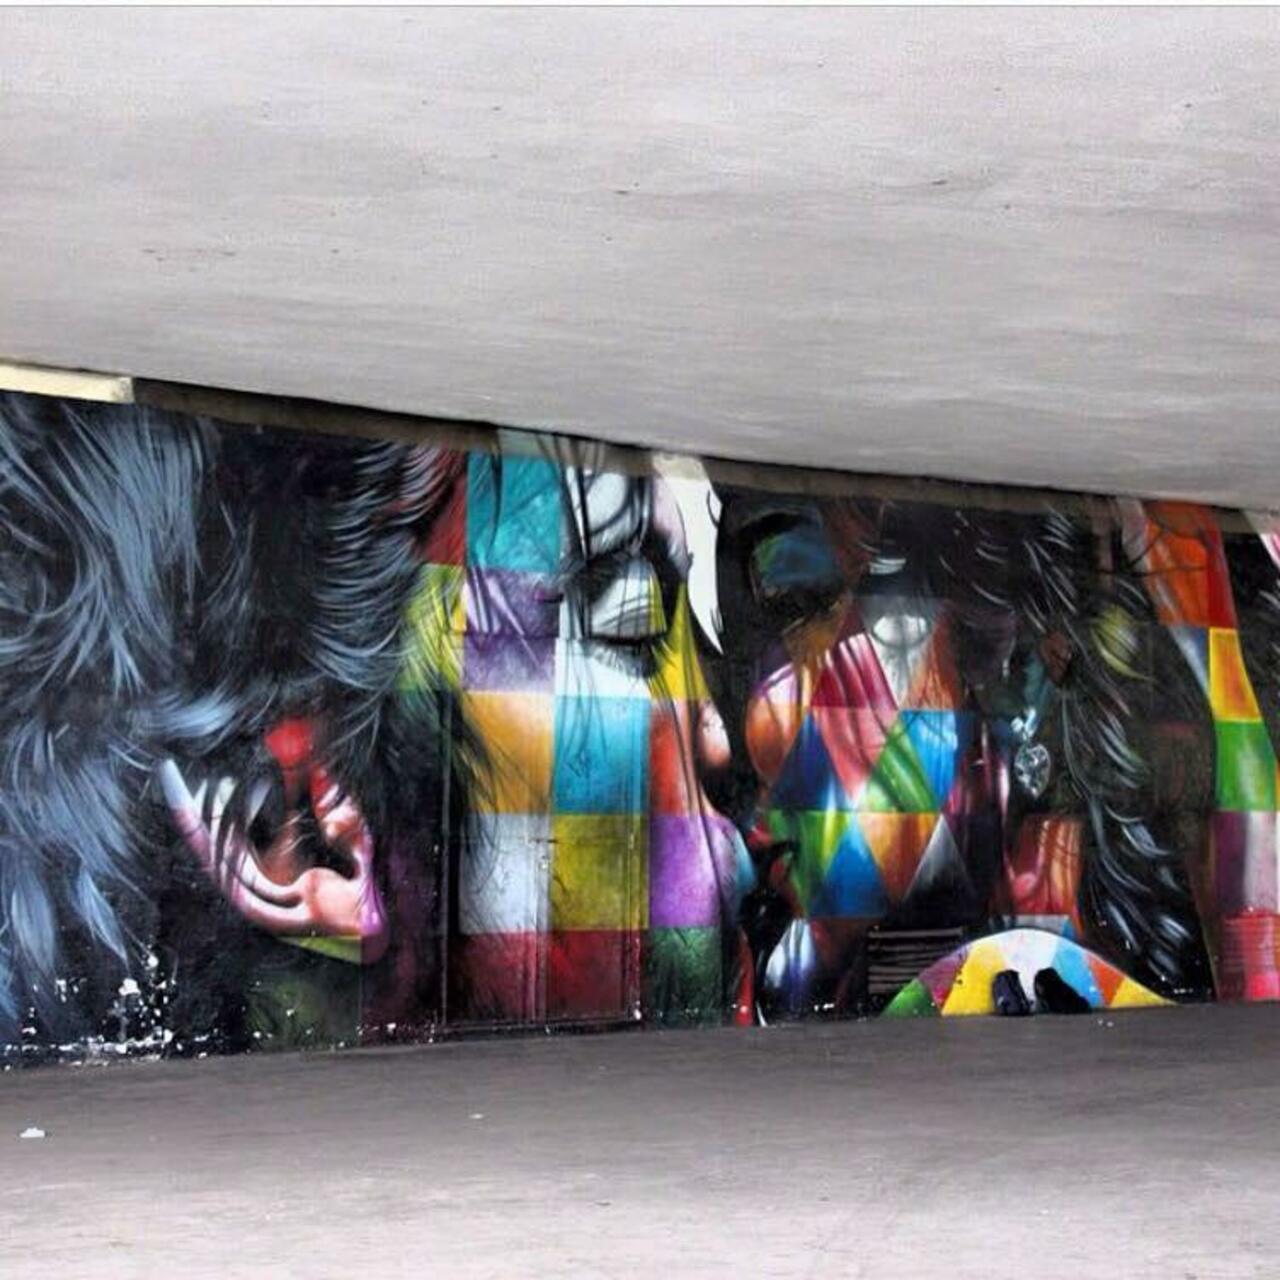 New Street Art by the brilliant Eduardo Kobra 

#art #mural #graffiti #streetart http://t.co/yvlfSW9vvX